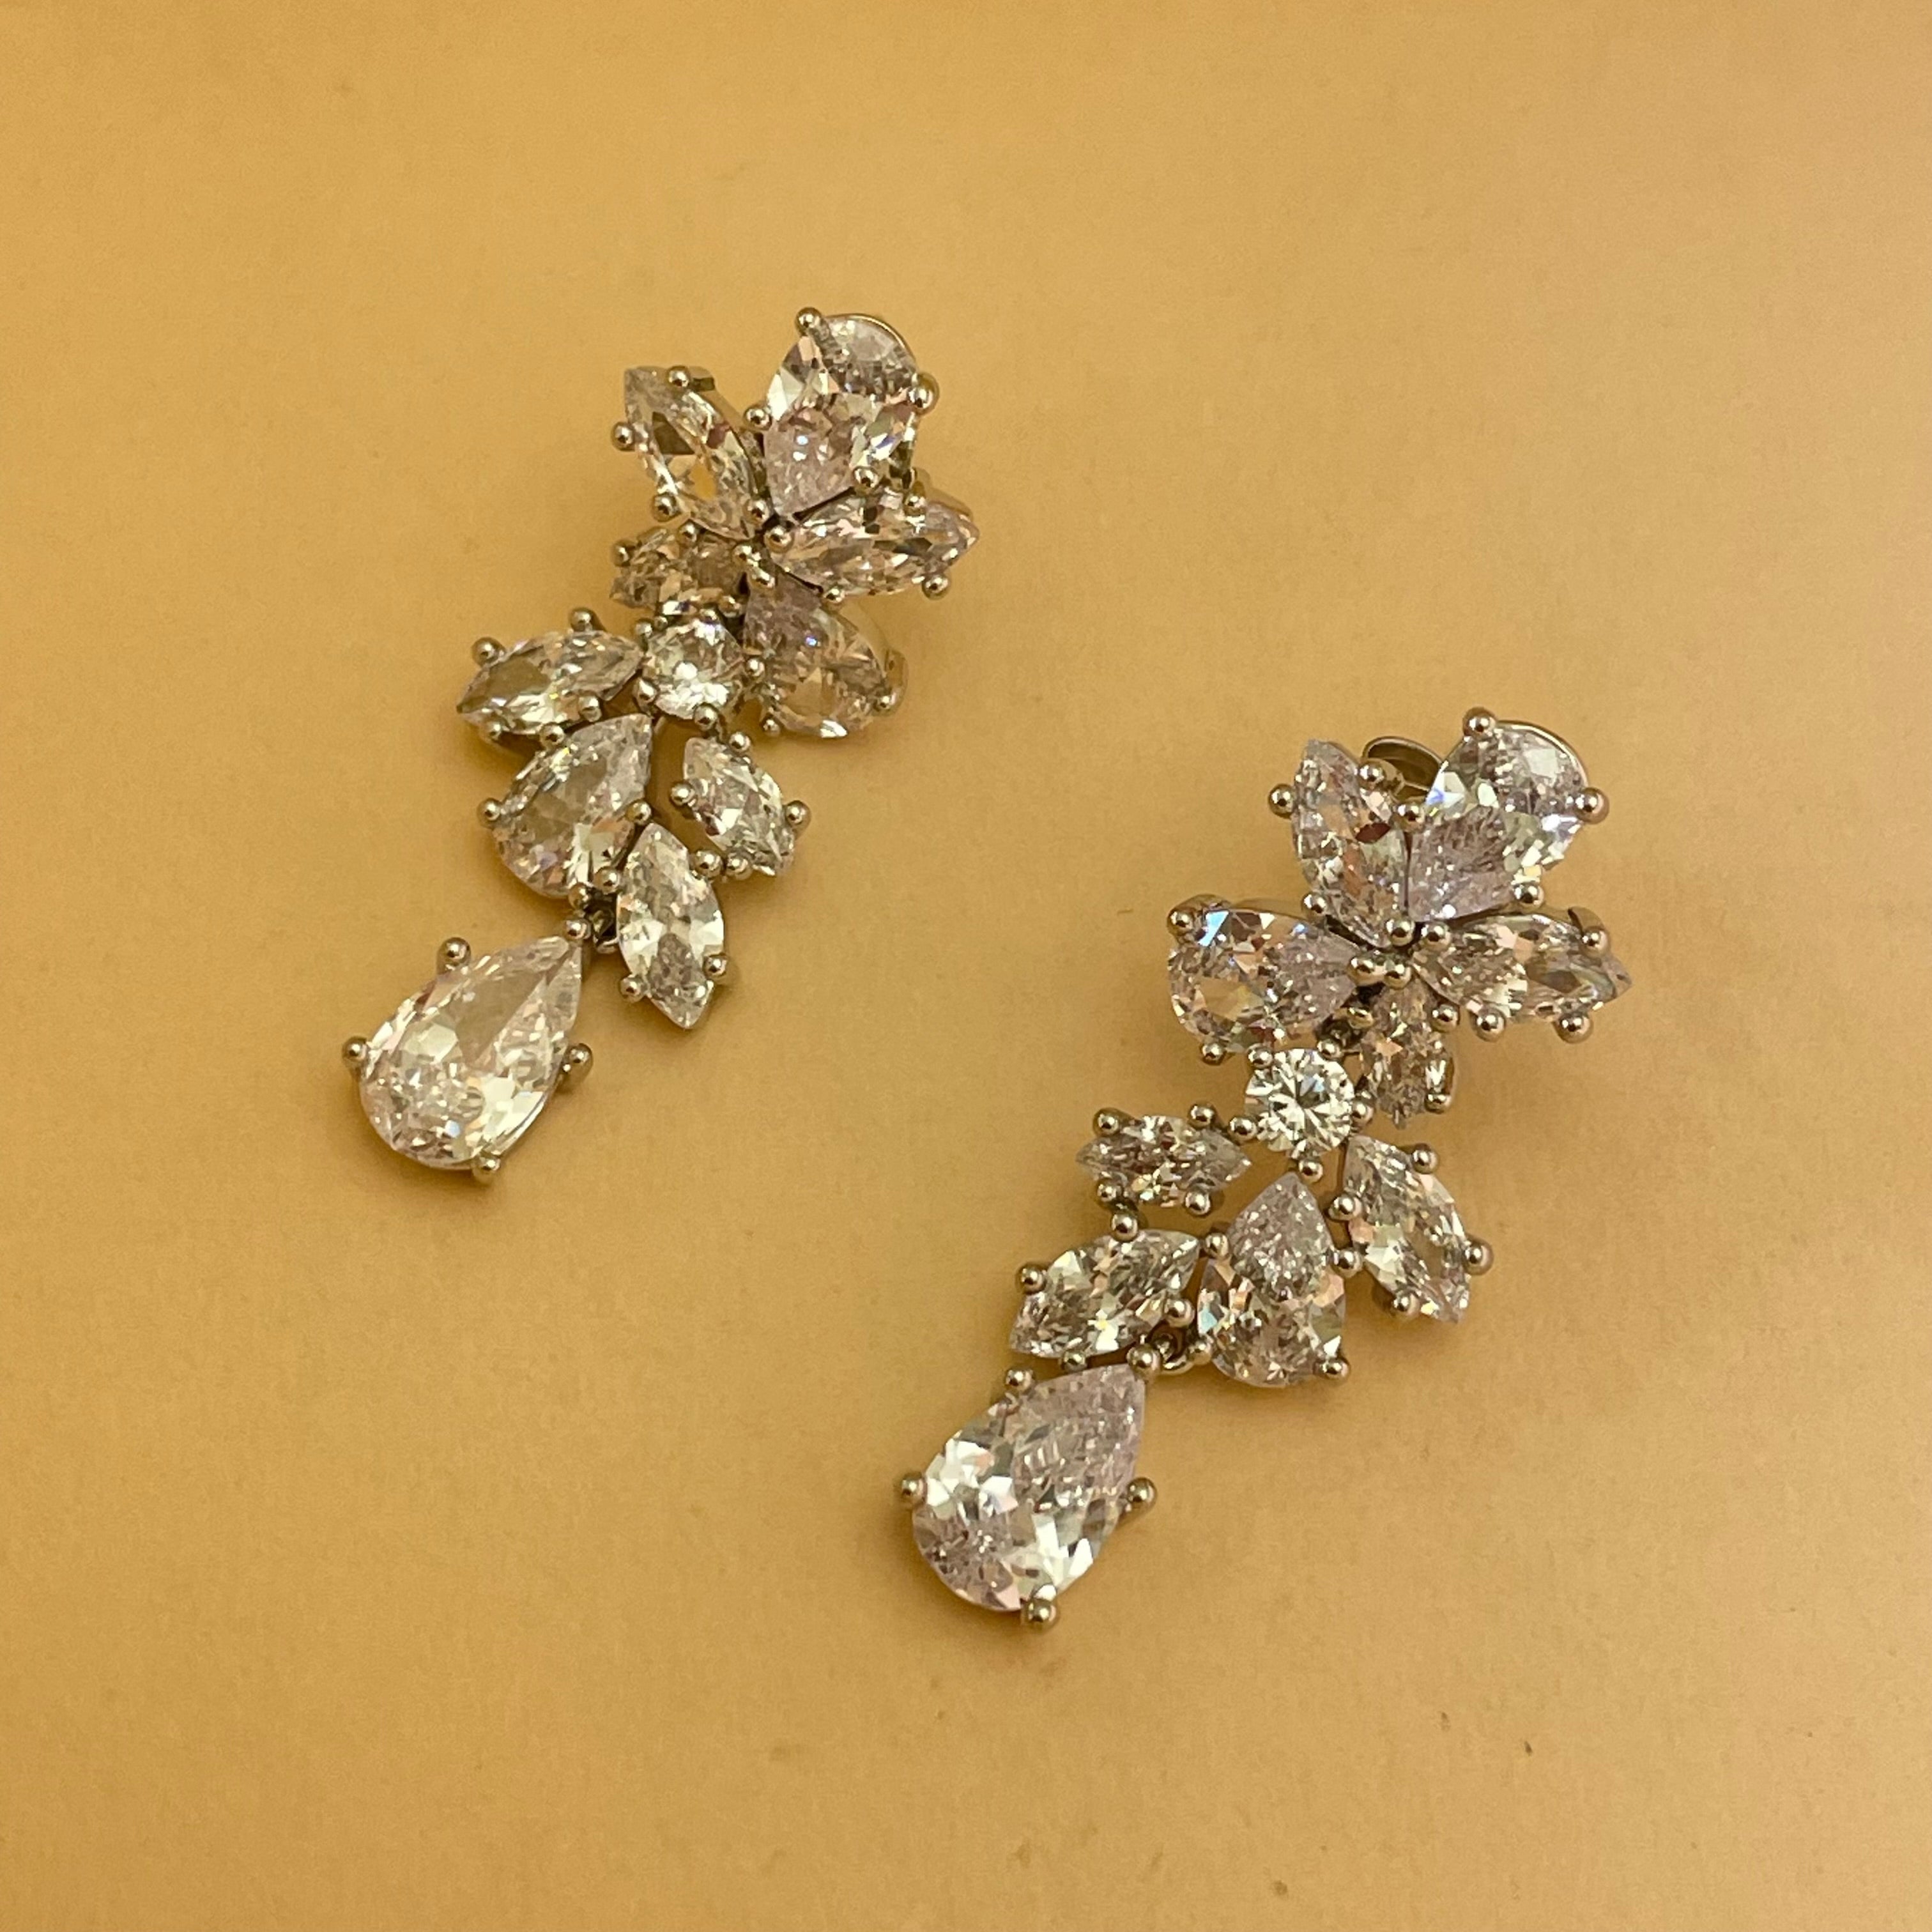 Elegant delicate earrings